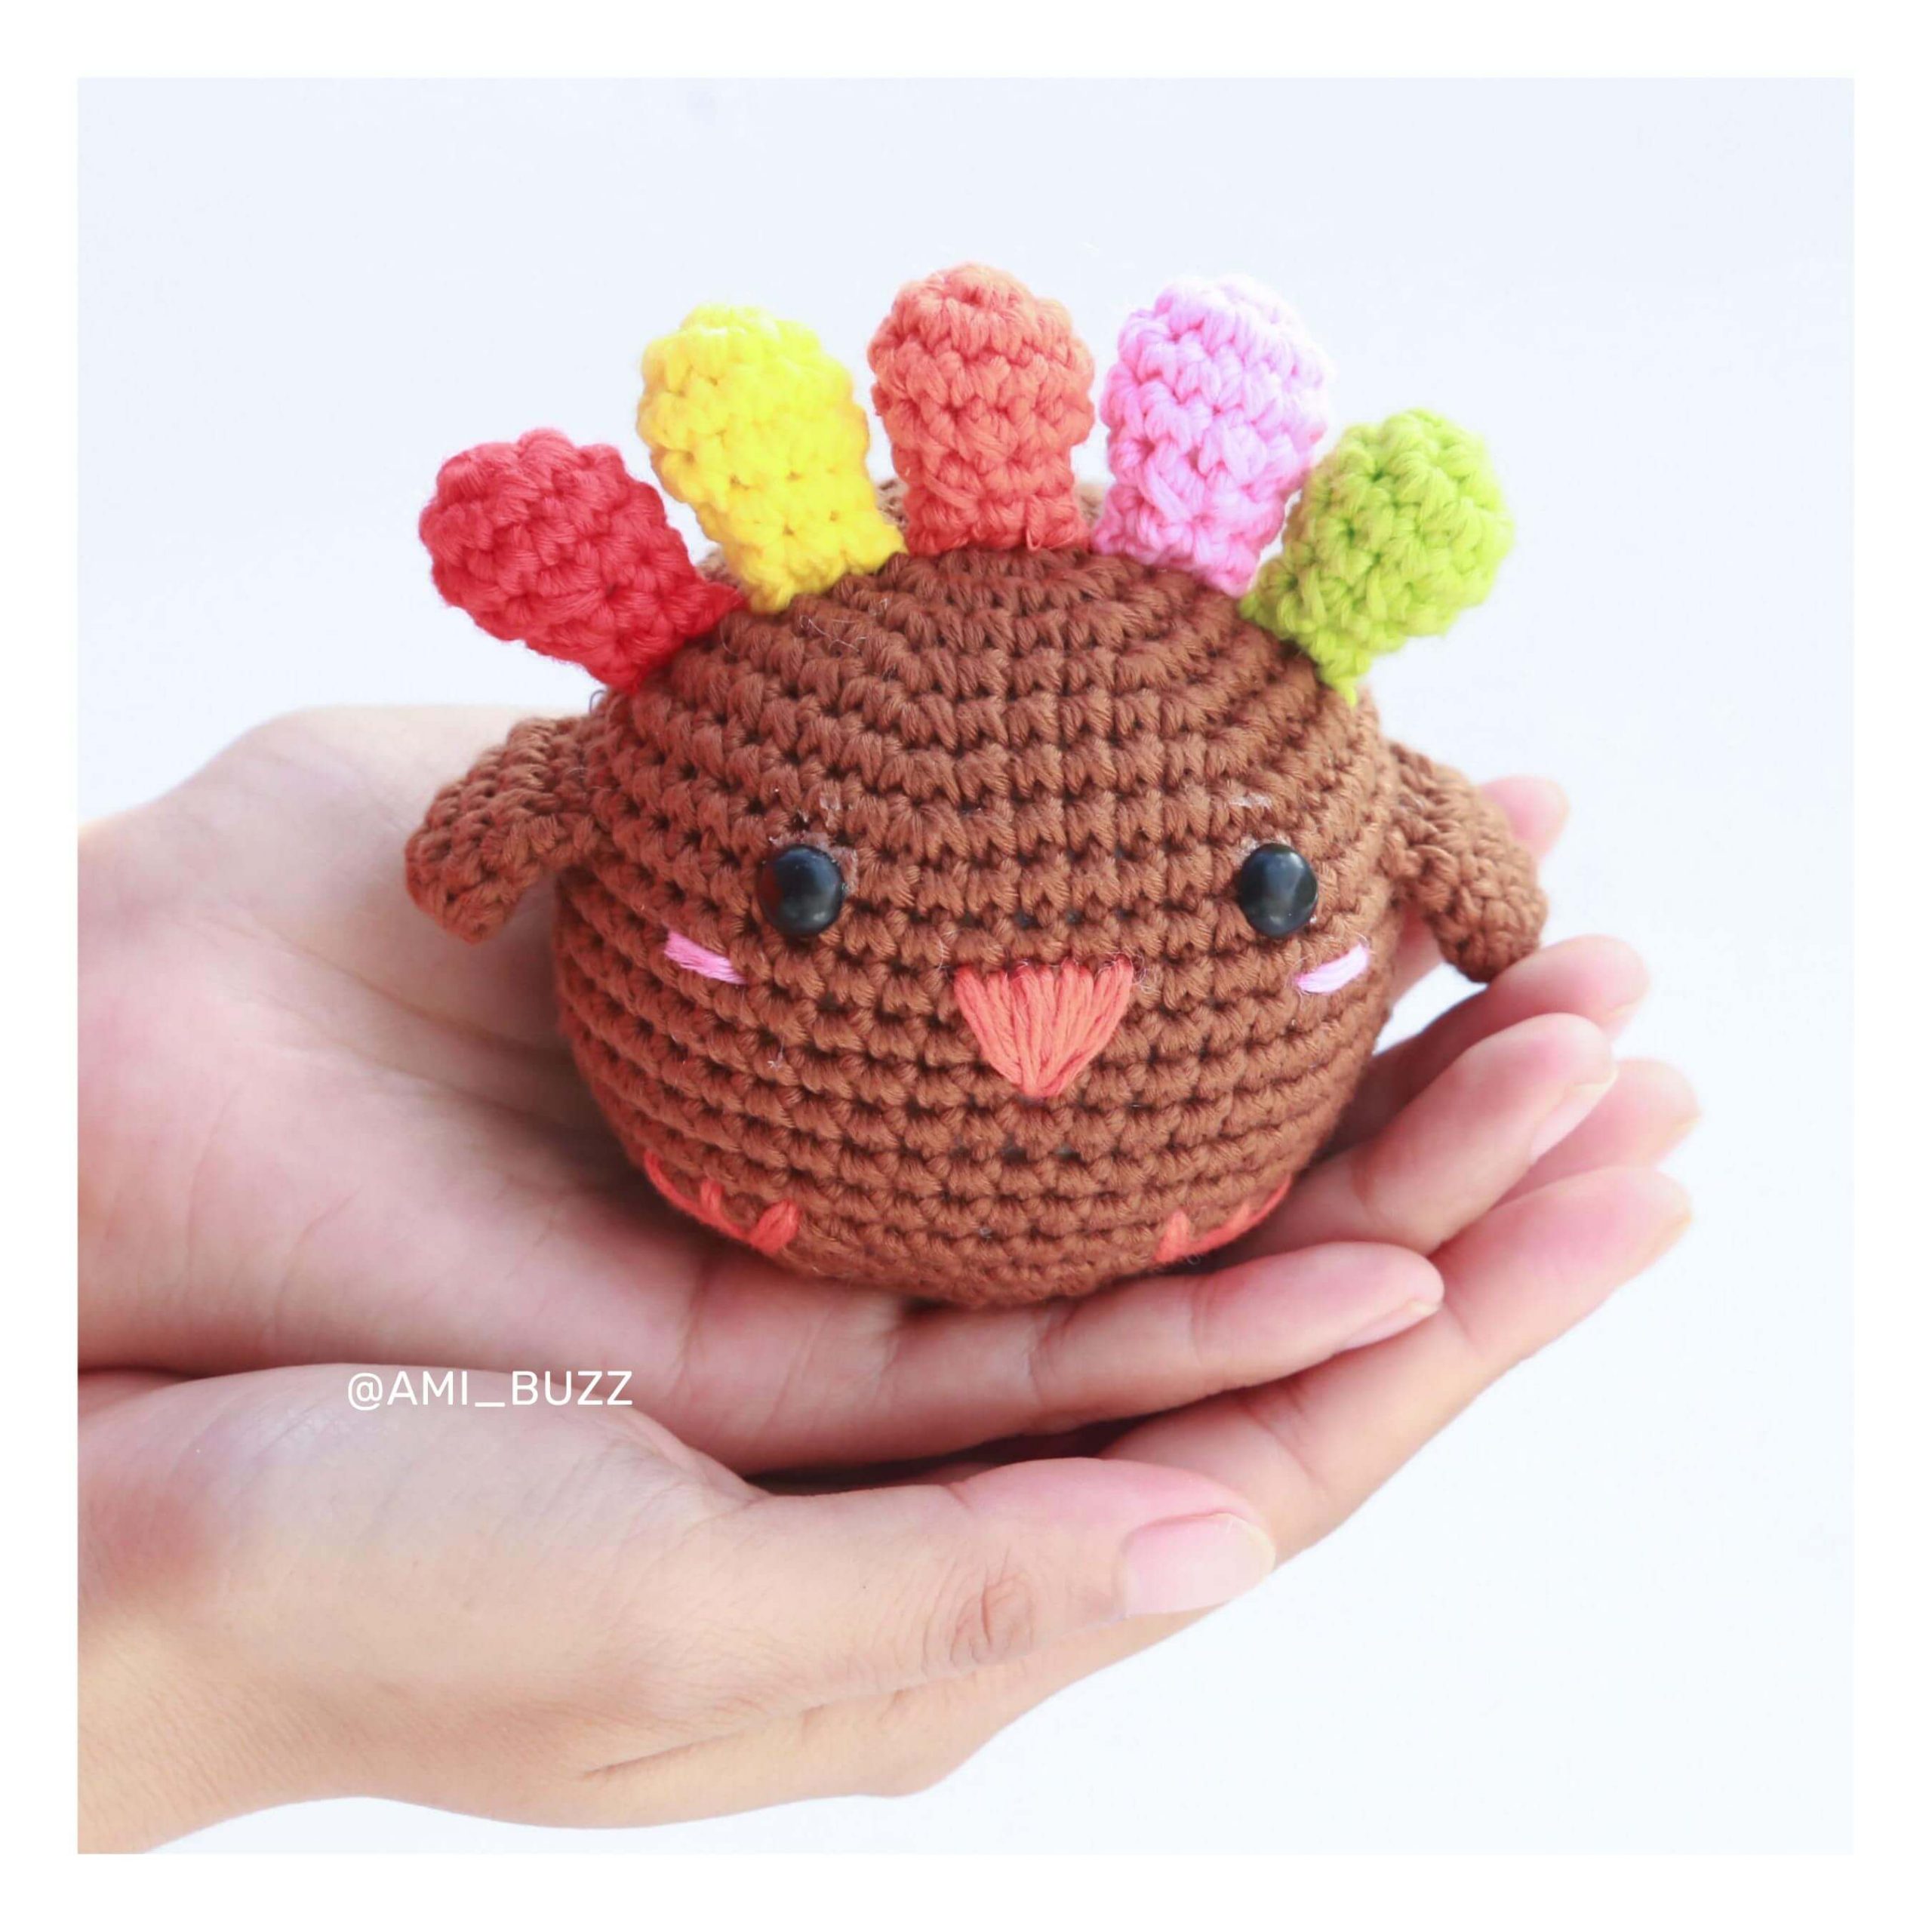 chicken-amigurumi-crochet-pattern-amibuzz (12)